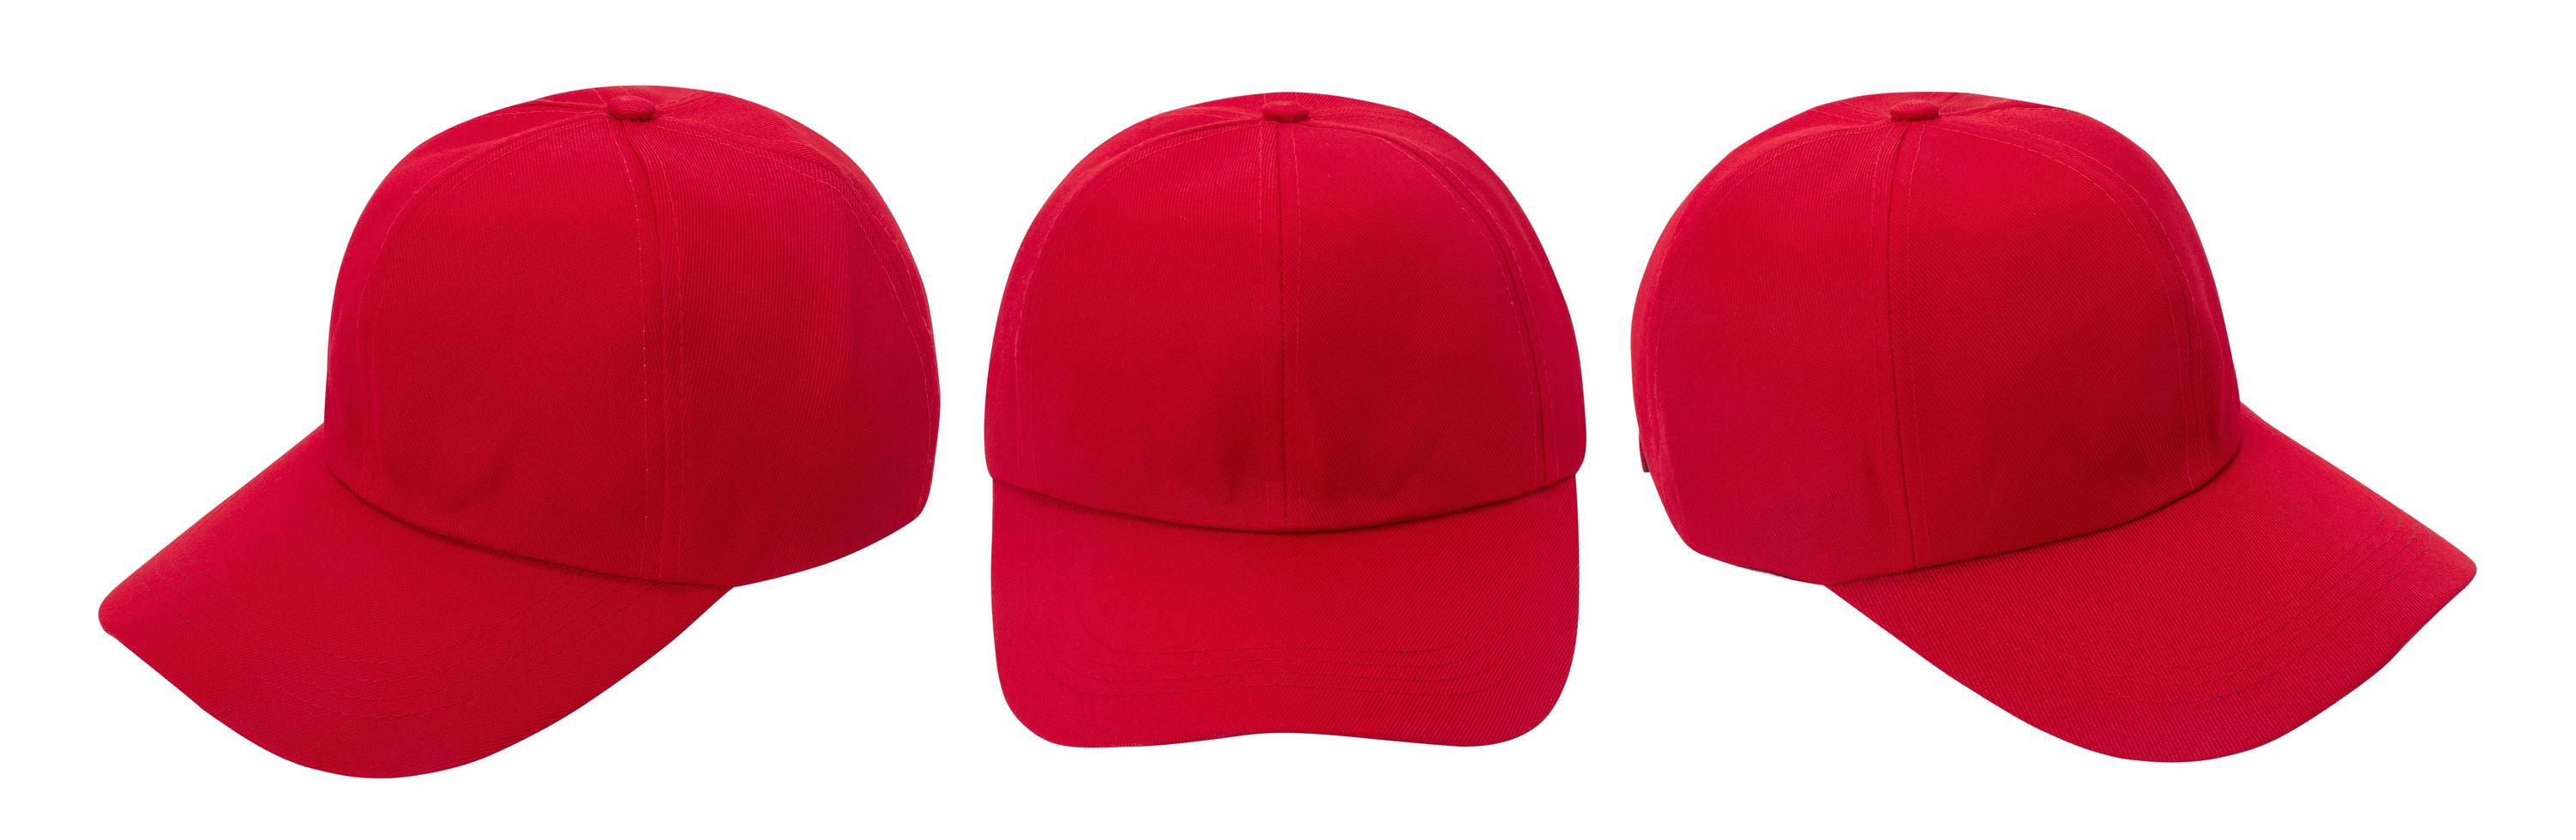 maqueta de gorra de béisbol roja foto